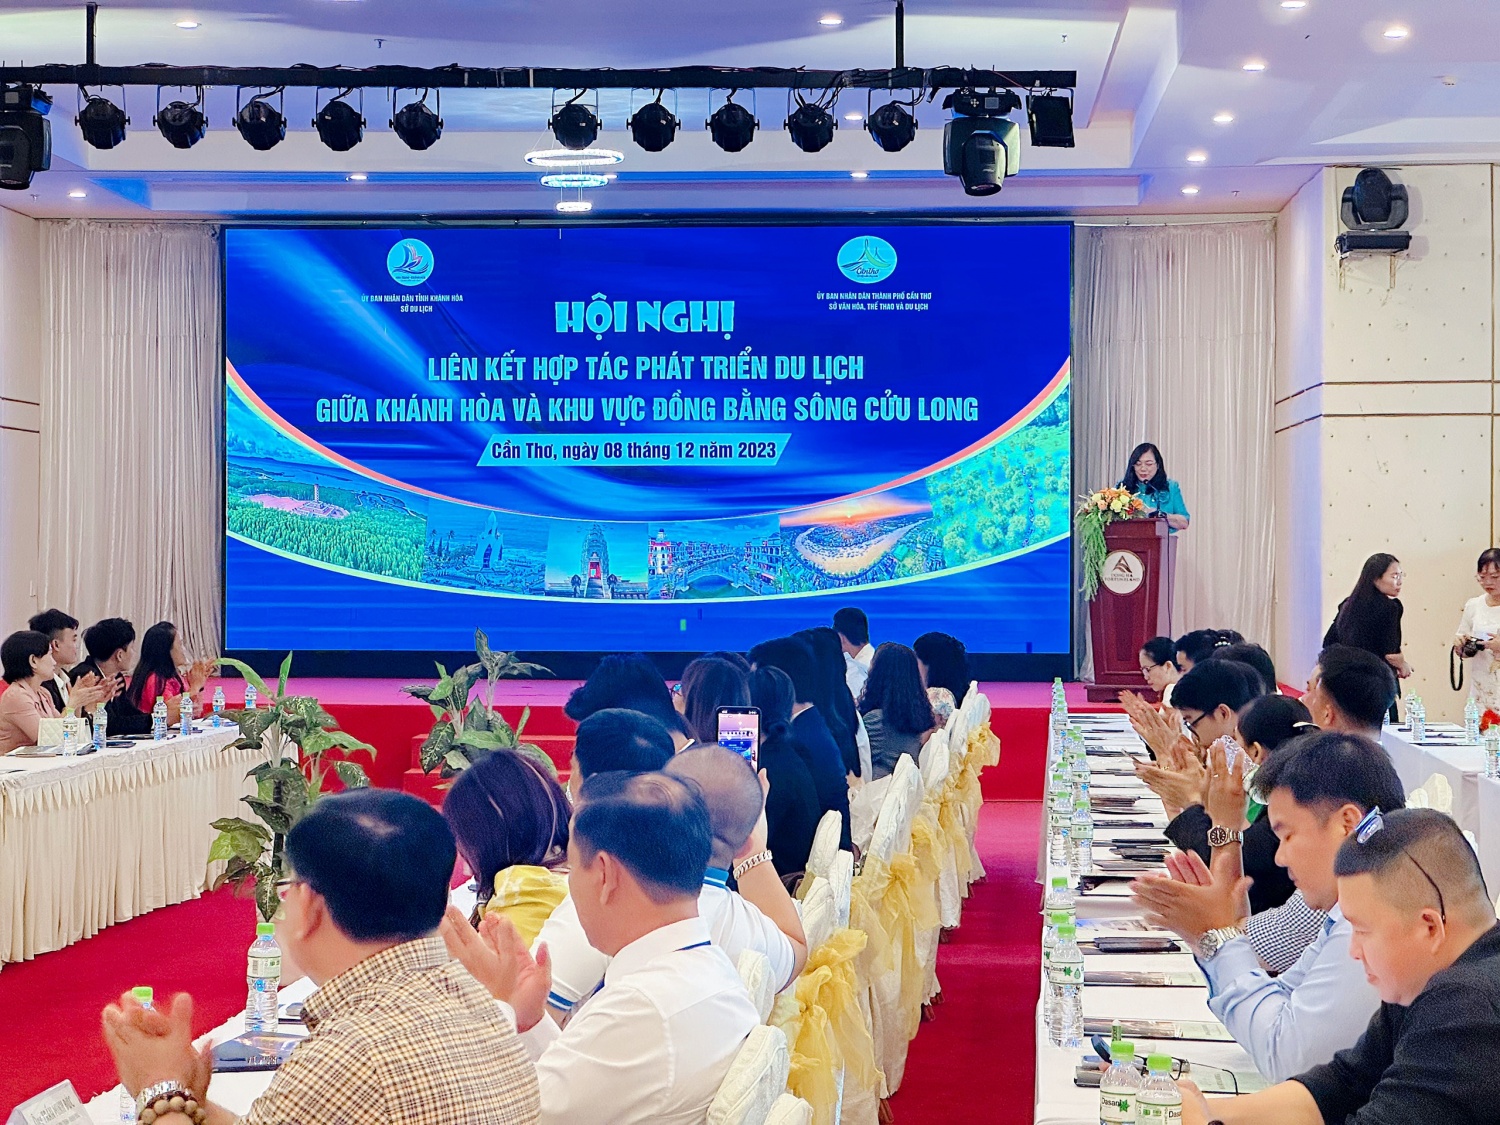 Khánh Hòa hợp tác phát triển du lịch với khu vực Đồng bằng sông Cửu Long